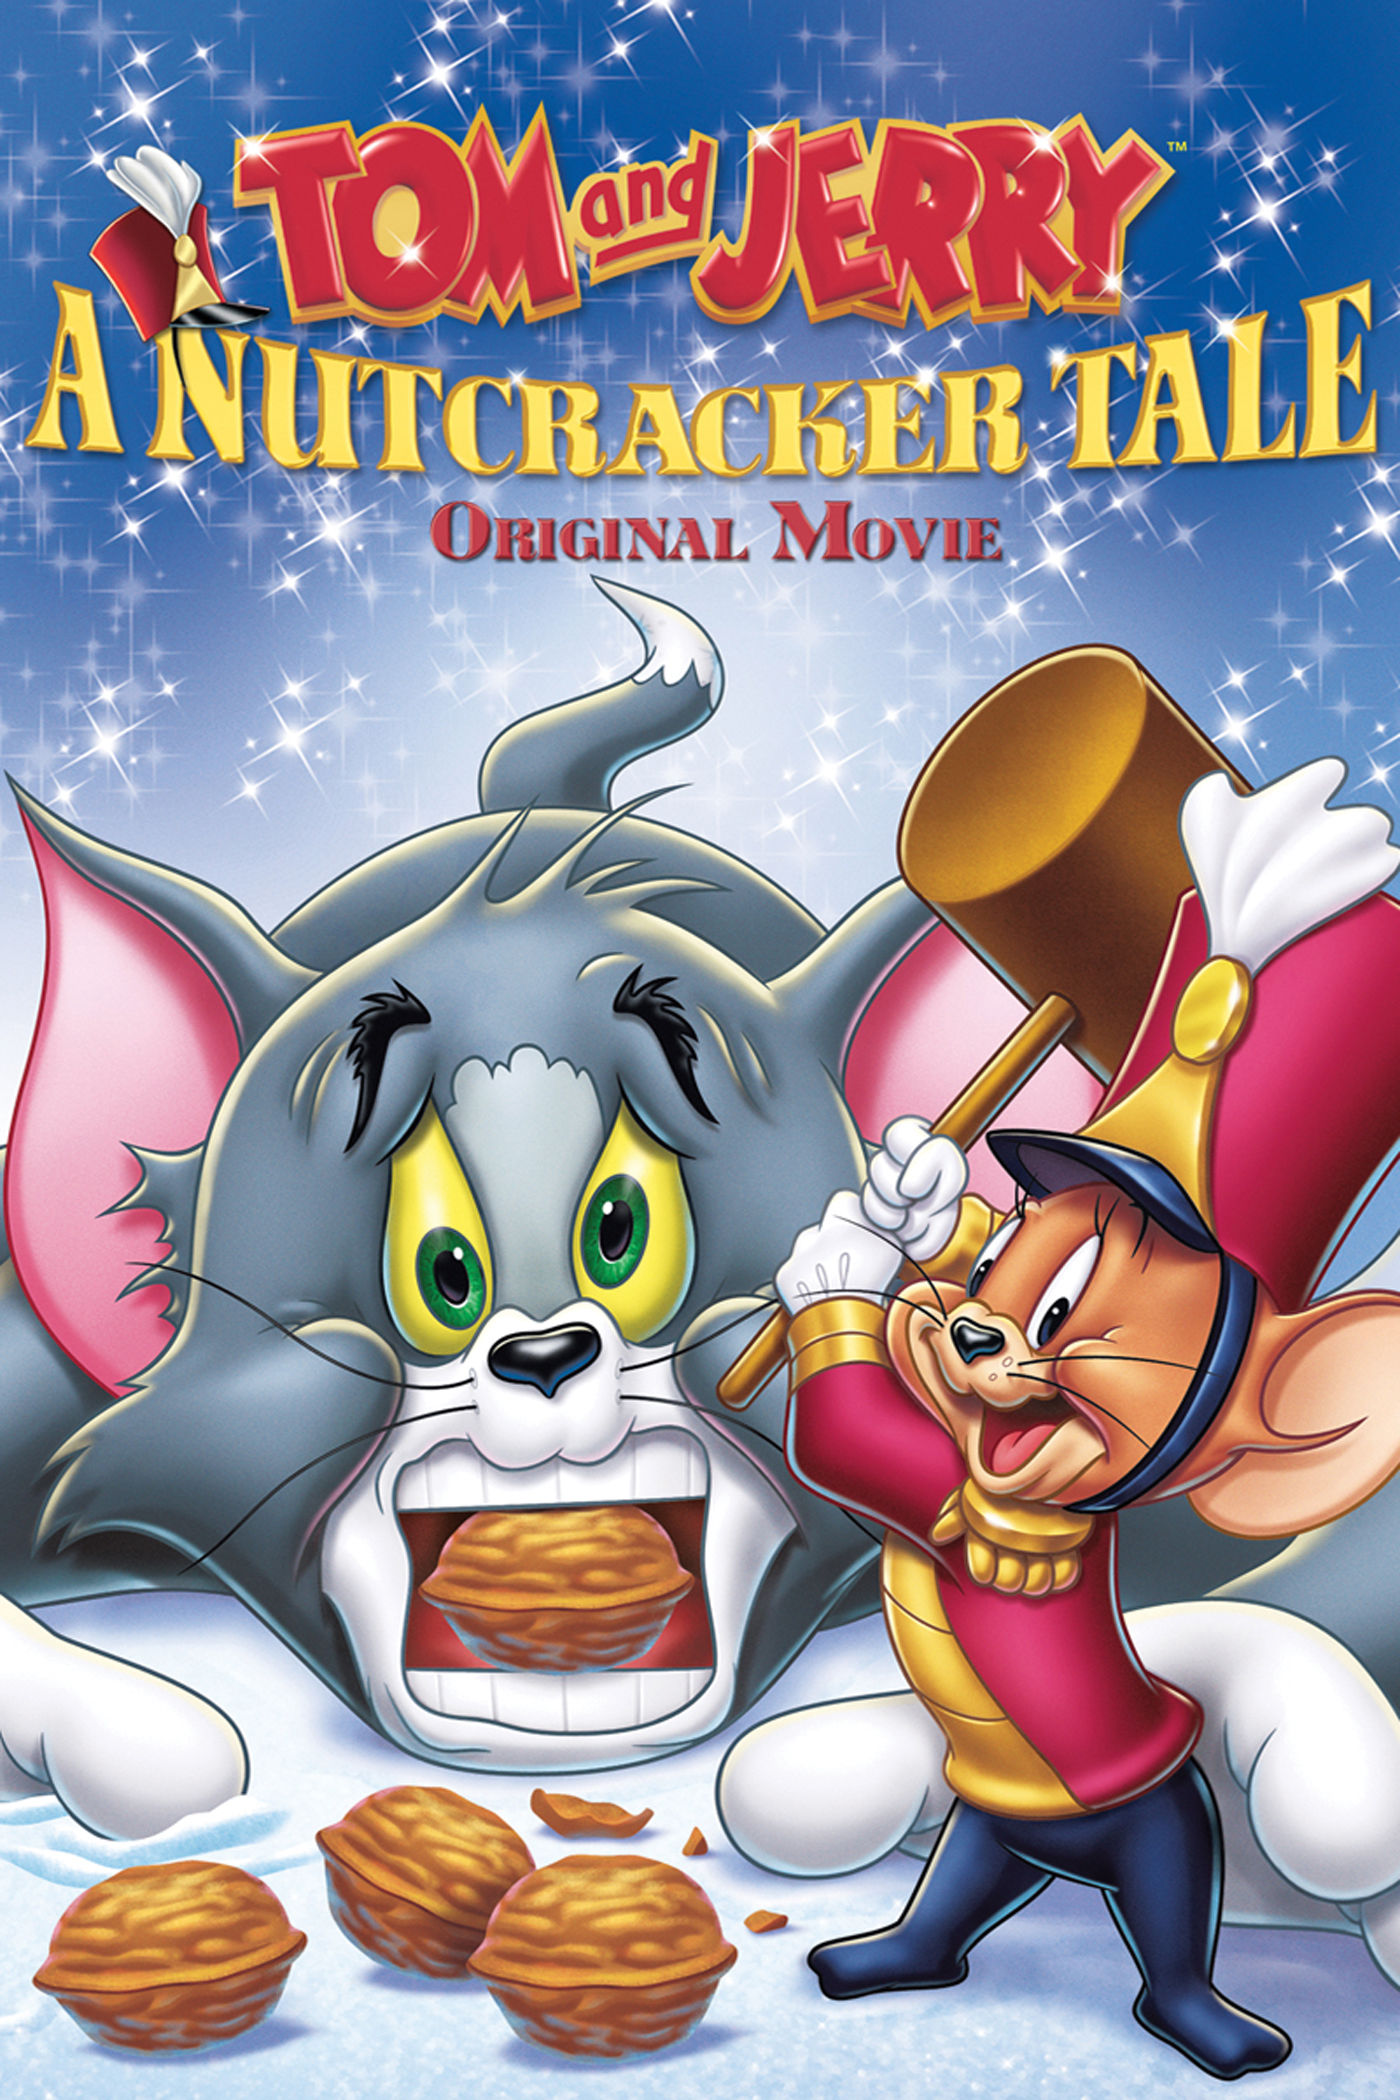 0851 - Tom and Jerry A nutcracker tale